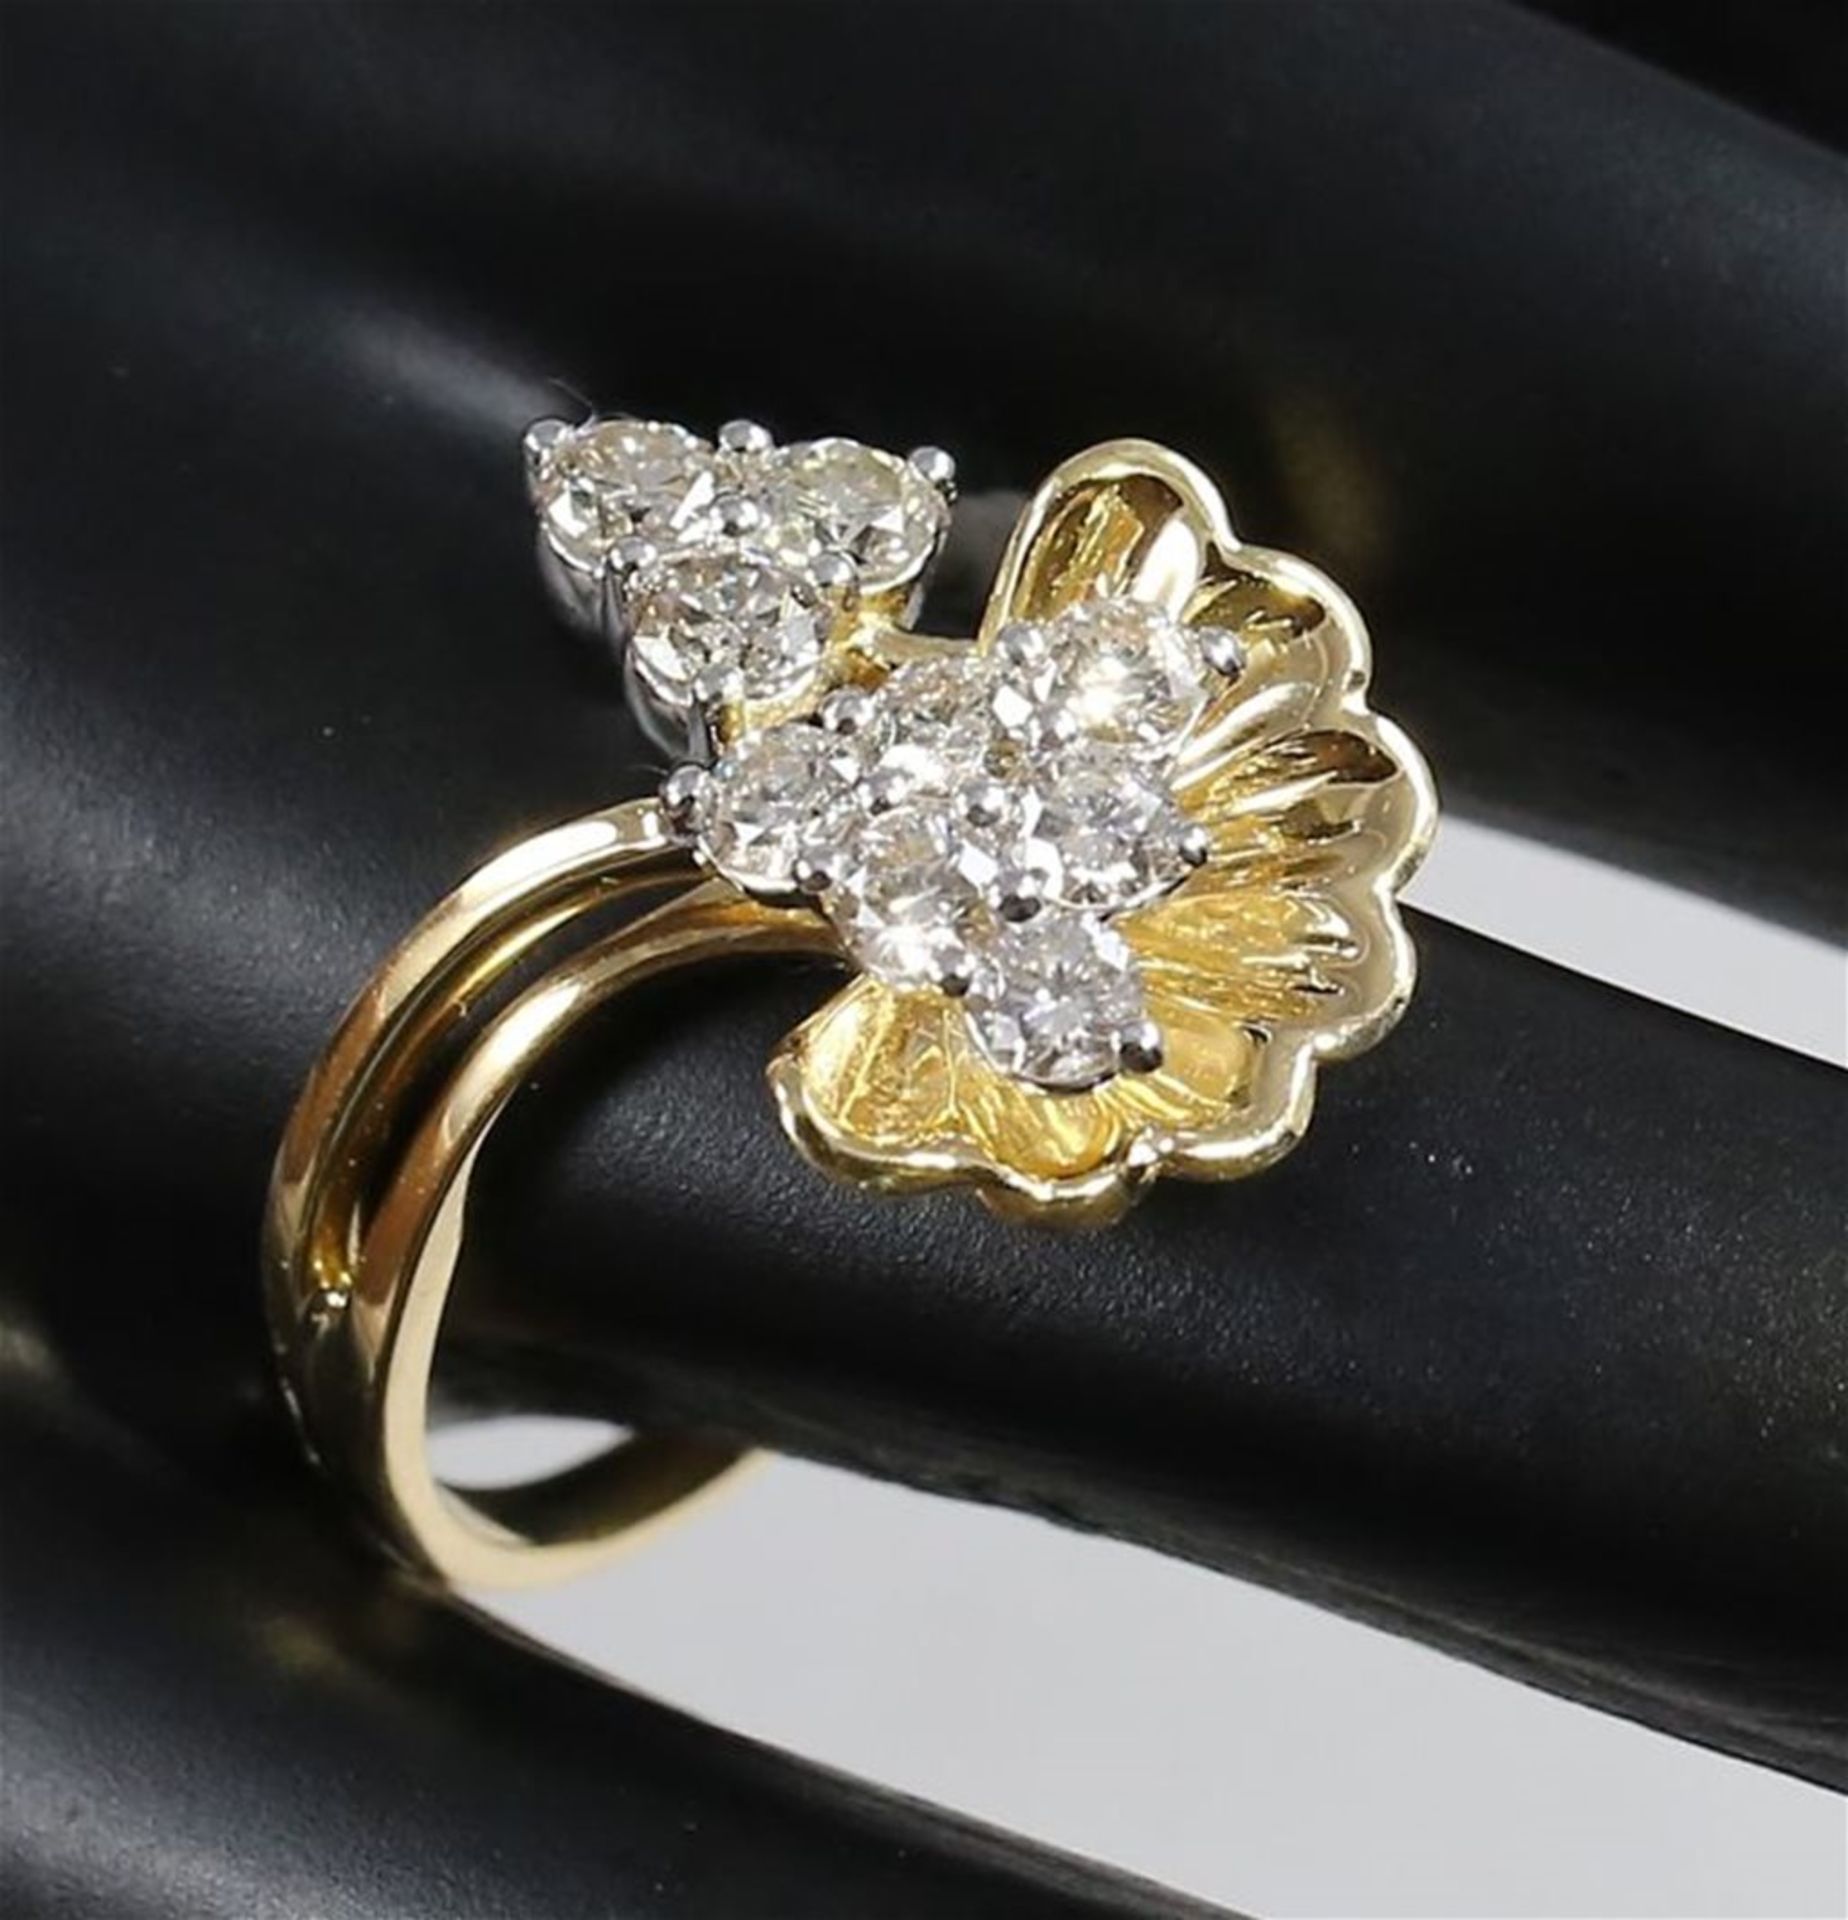 IGI certified 18 K / 750 Yellow gold Designer Diamond Ring - Image 4 of 9